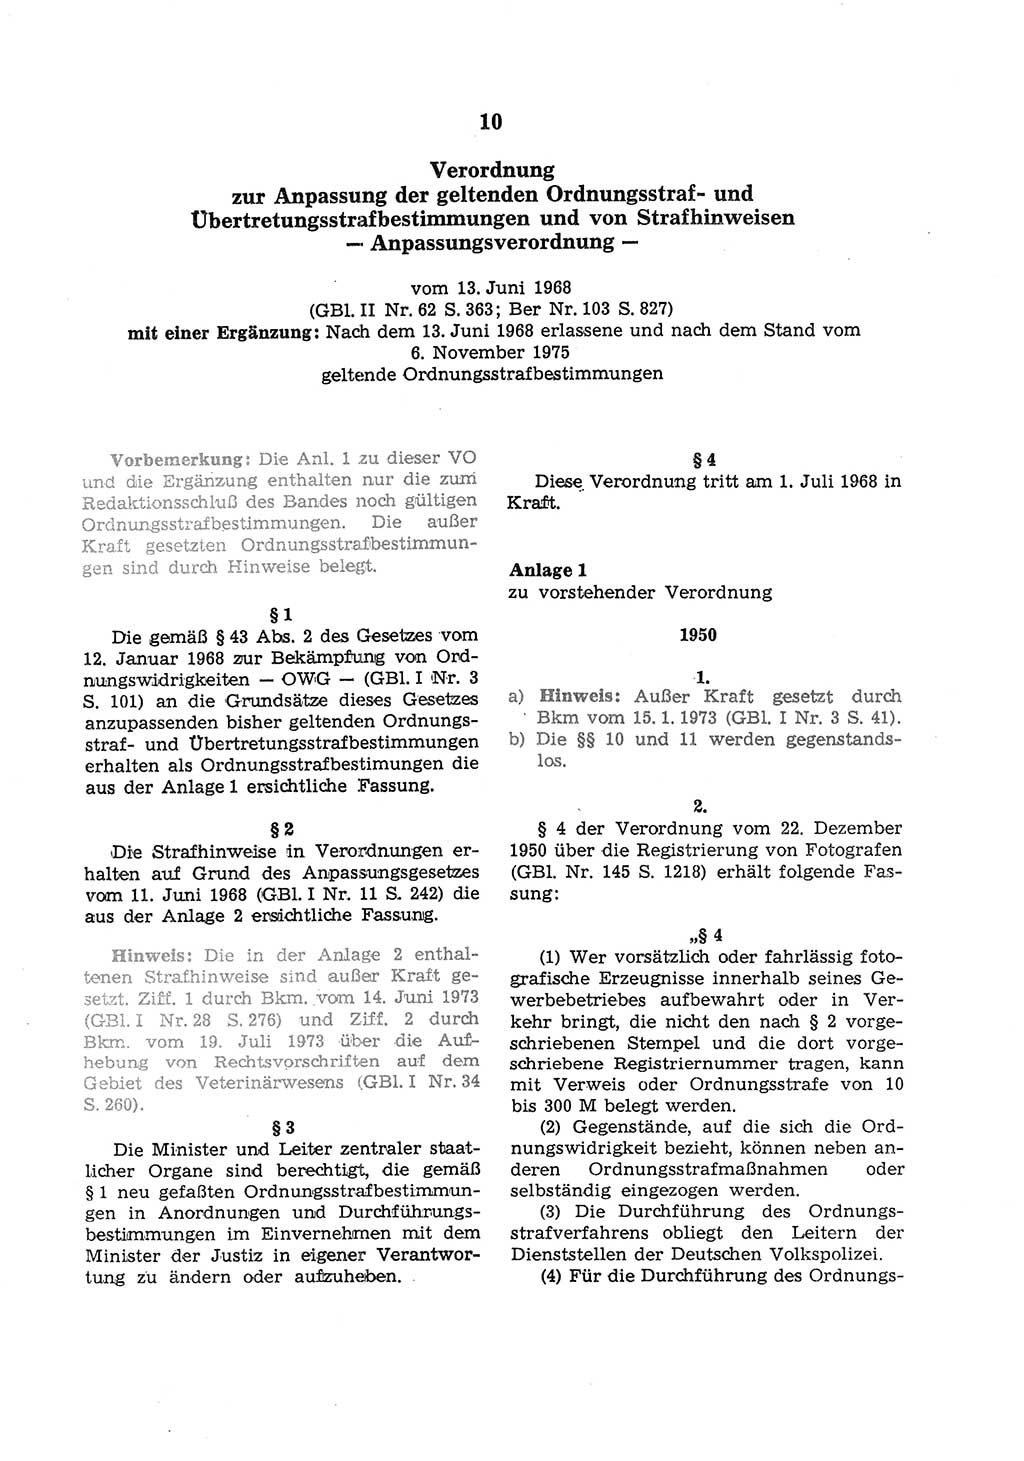 Strafgesetzbuch (StGB) der Deutschen Demokratischen Republik (DDR) und angrenzende Gesetze und Bestimmungen 1975, Seite 147 (StGB DDR Ges. Best. 1975, S. 147)